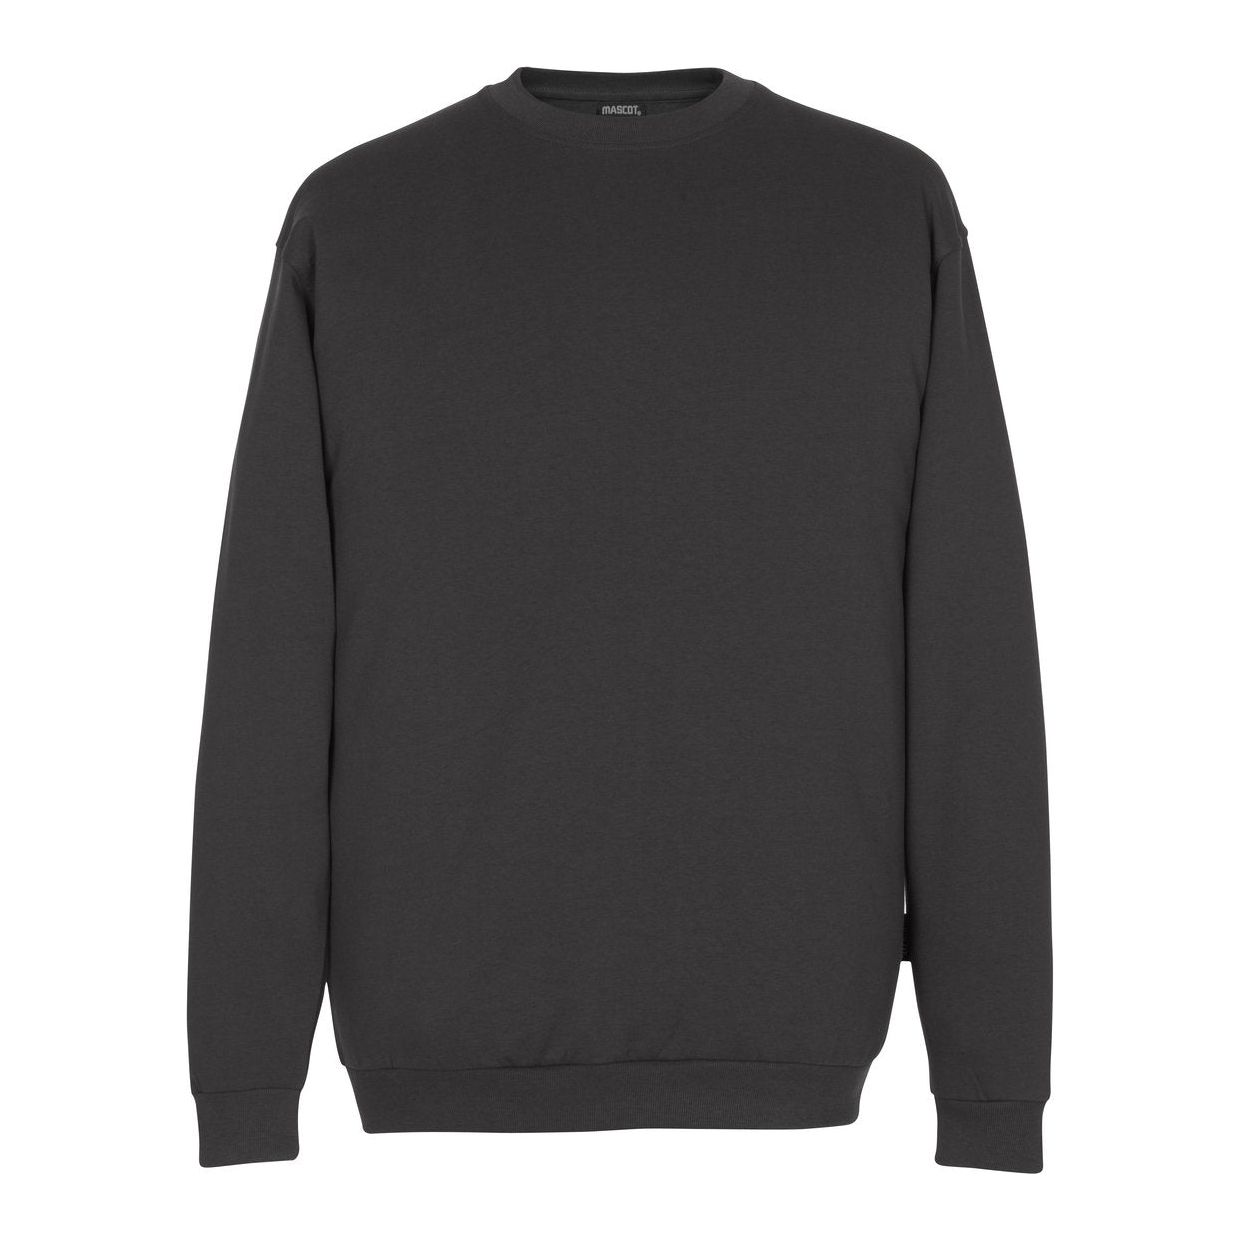 Mascot Caribien Sweatshirt Warm-Soft Dark Anthracite Grey 00784-280-18 Front